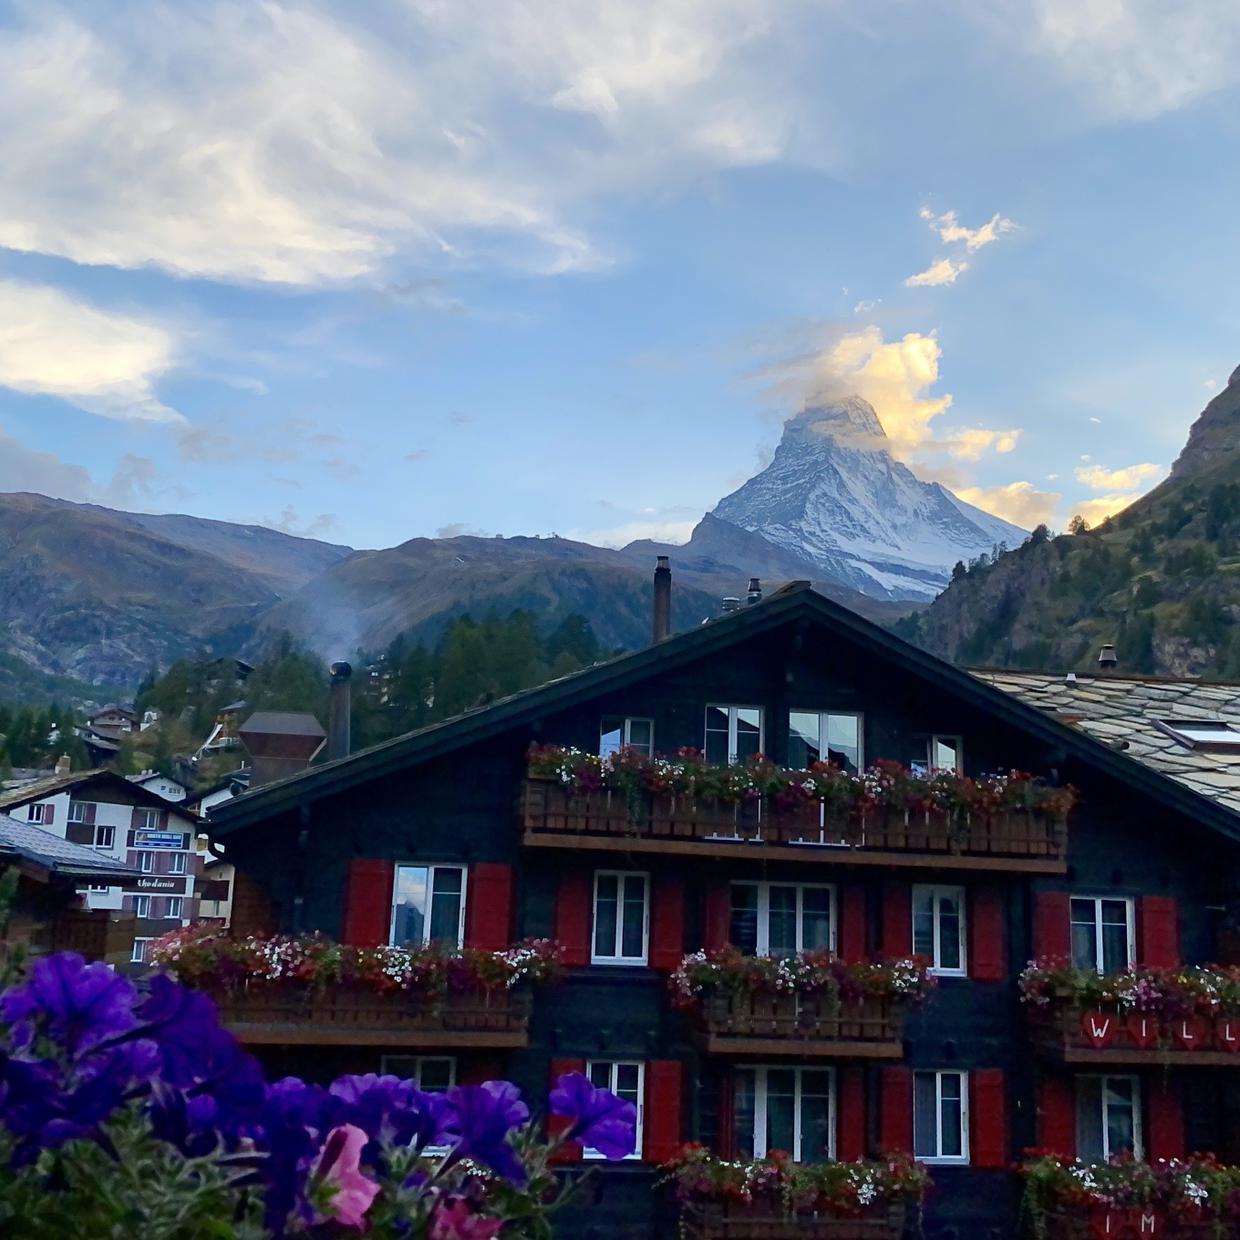 The Matterhorn, viewed from the town of Zermatt.